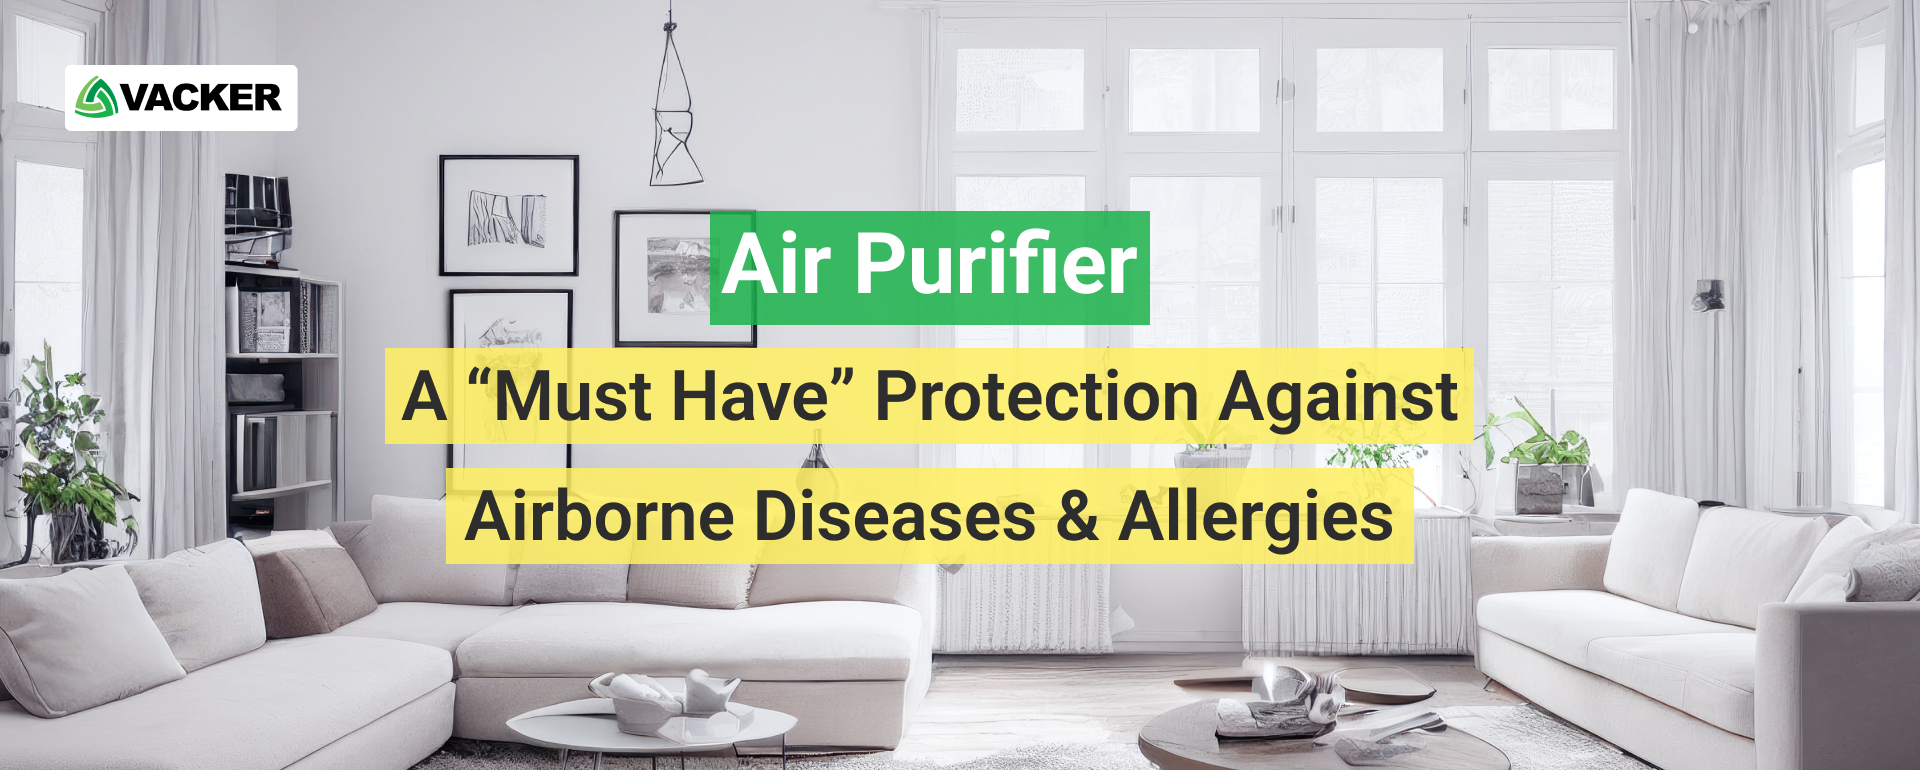 ایئر پیوریفائر - ہوا سے پیدا ہونے والی بیماریوں کے خلاف ایک "ضروری" تحفظ & الرجی